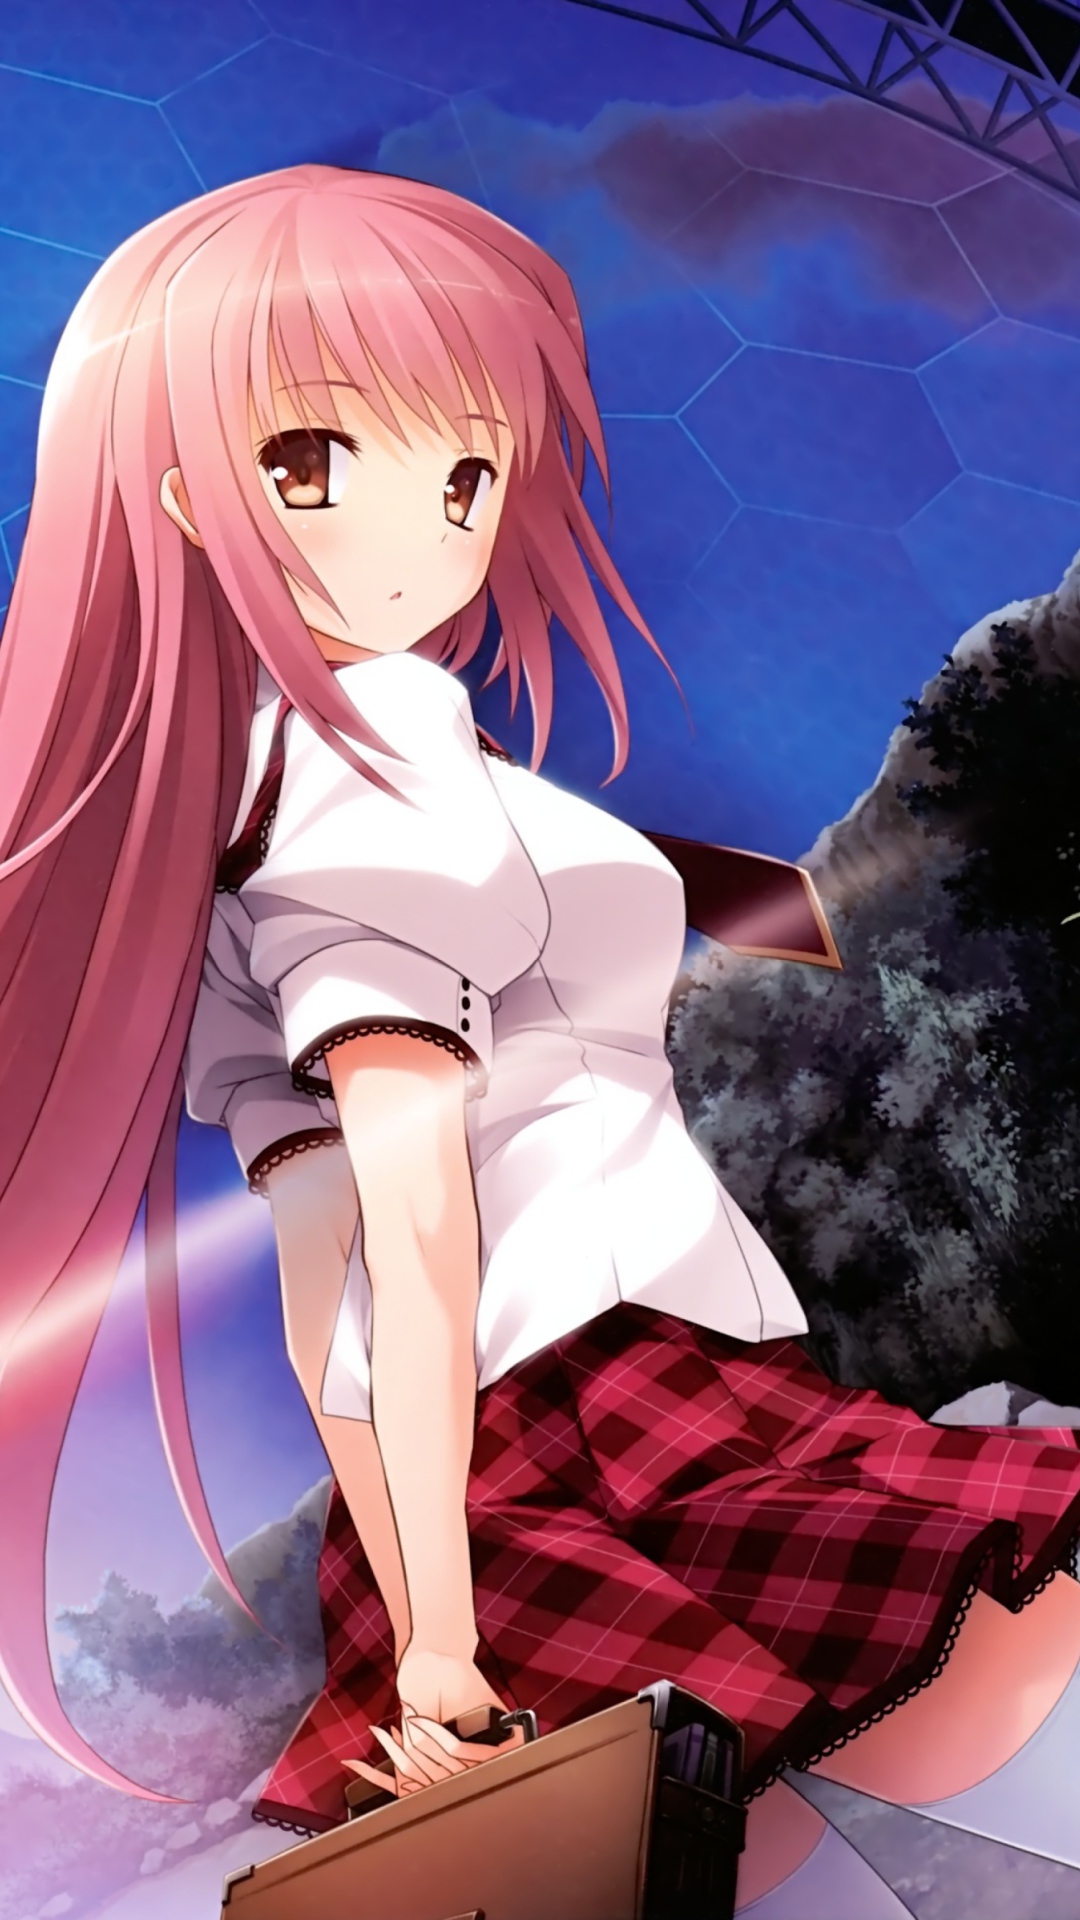 Das Anime School Girl Wallpaper 1080x1920